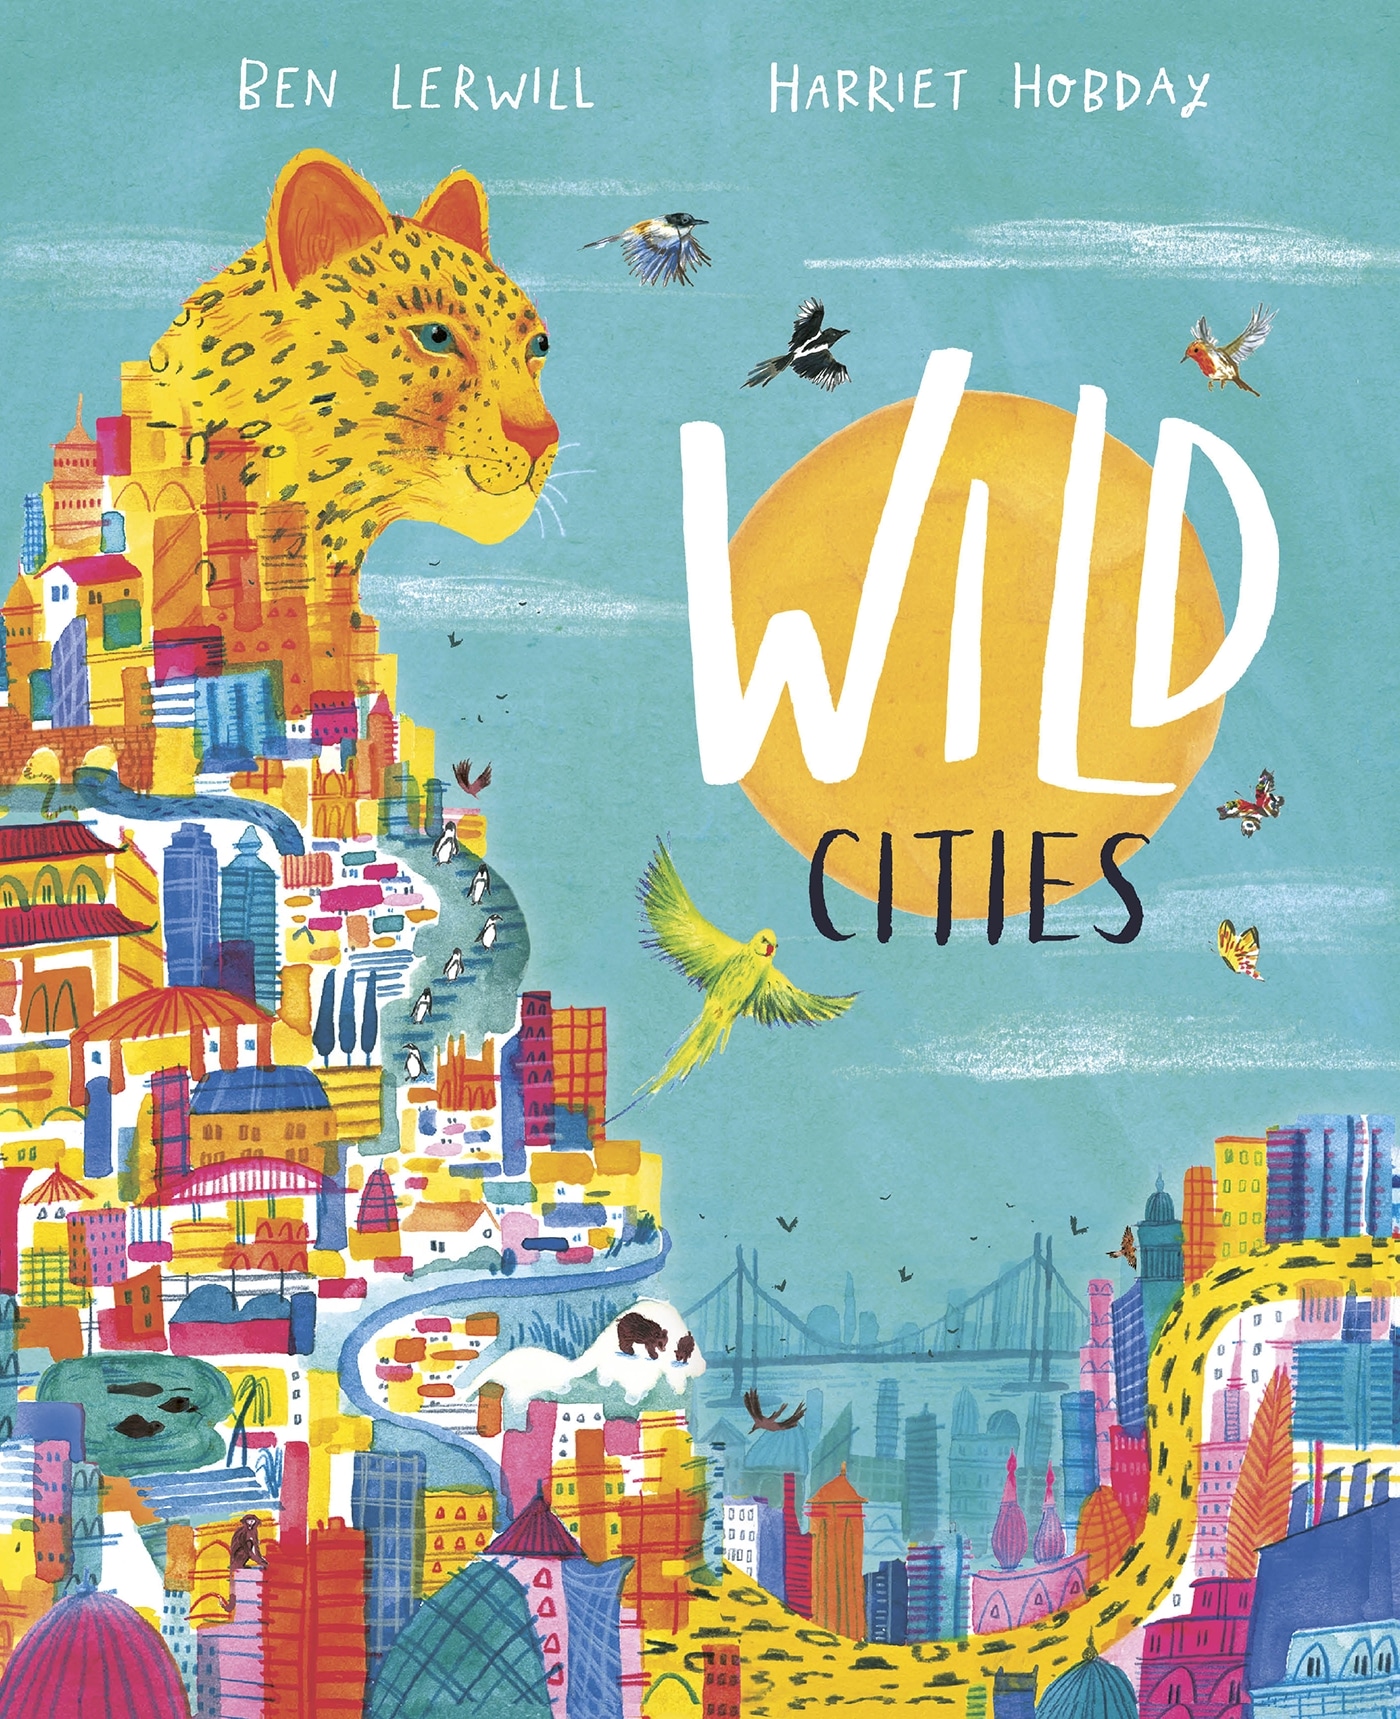 Book “Wild Cities” by Ben Lerwill, Harriet Hobday — September 3, 2020